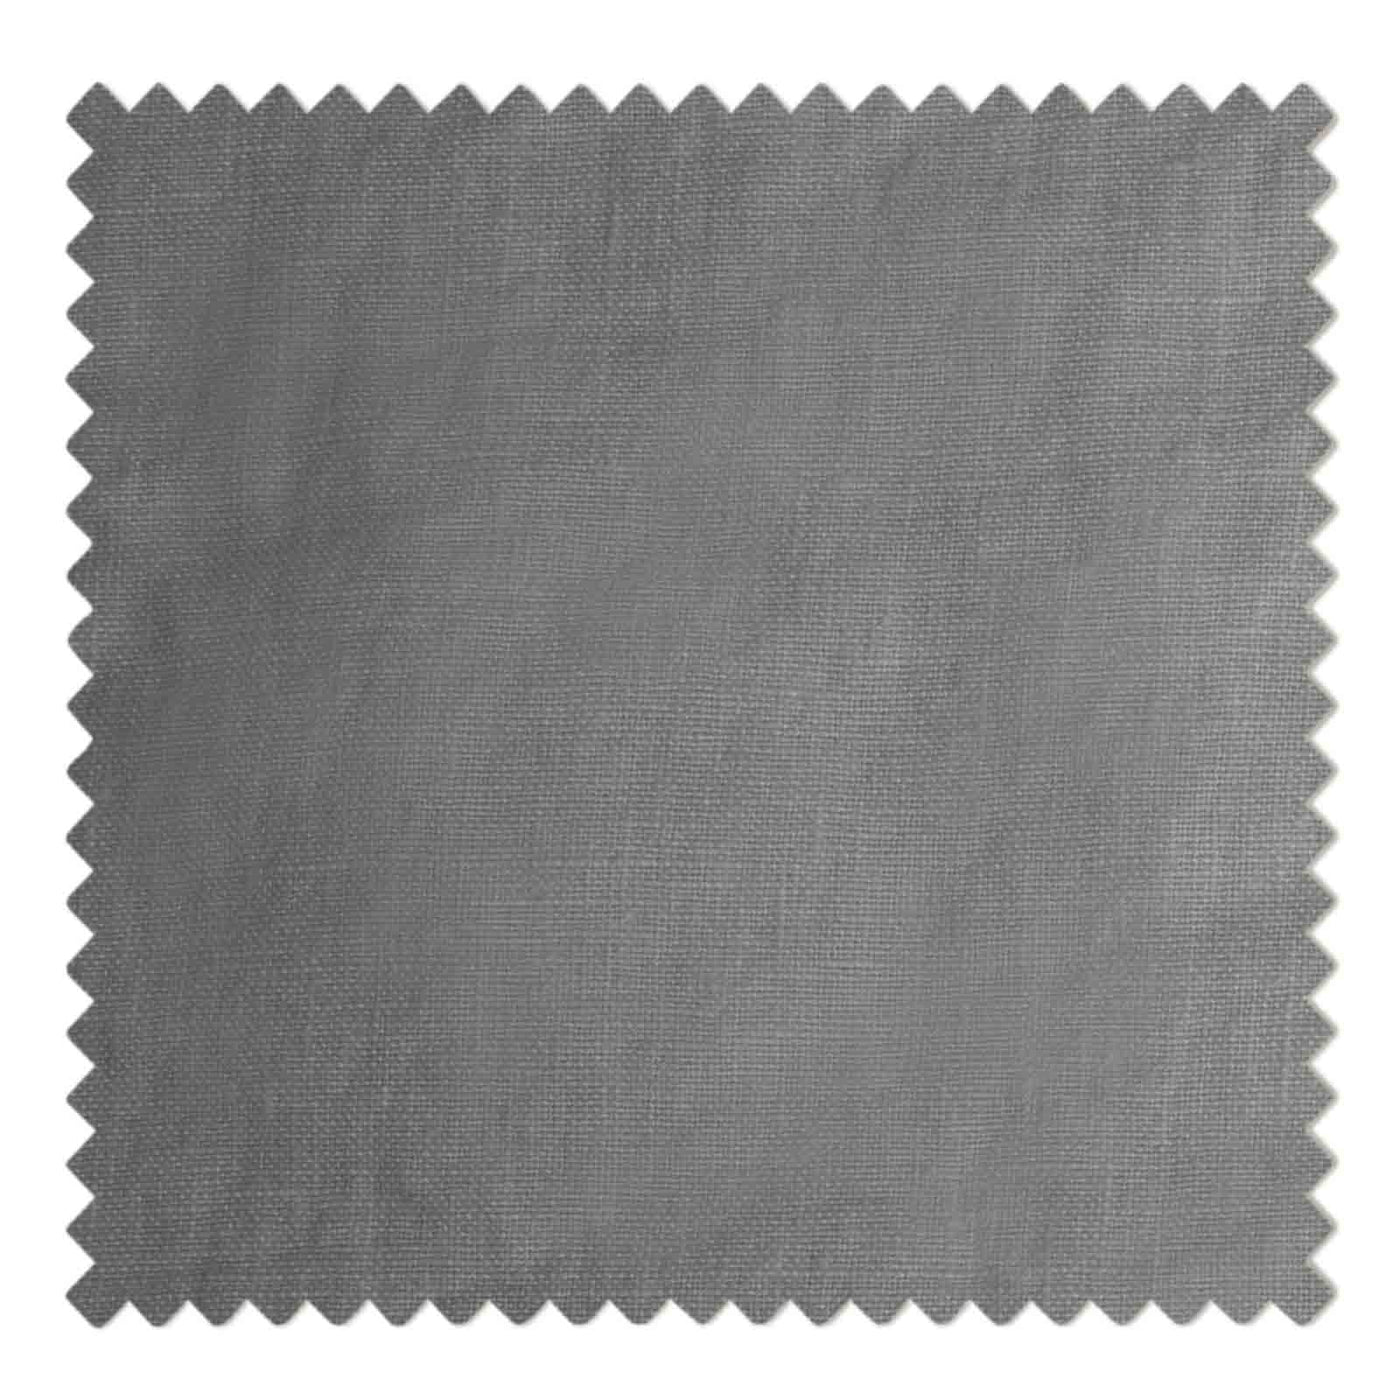 01681-12 Charcoal Gray